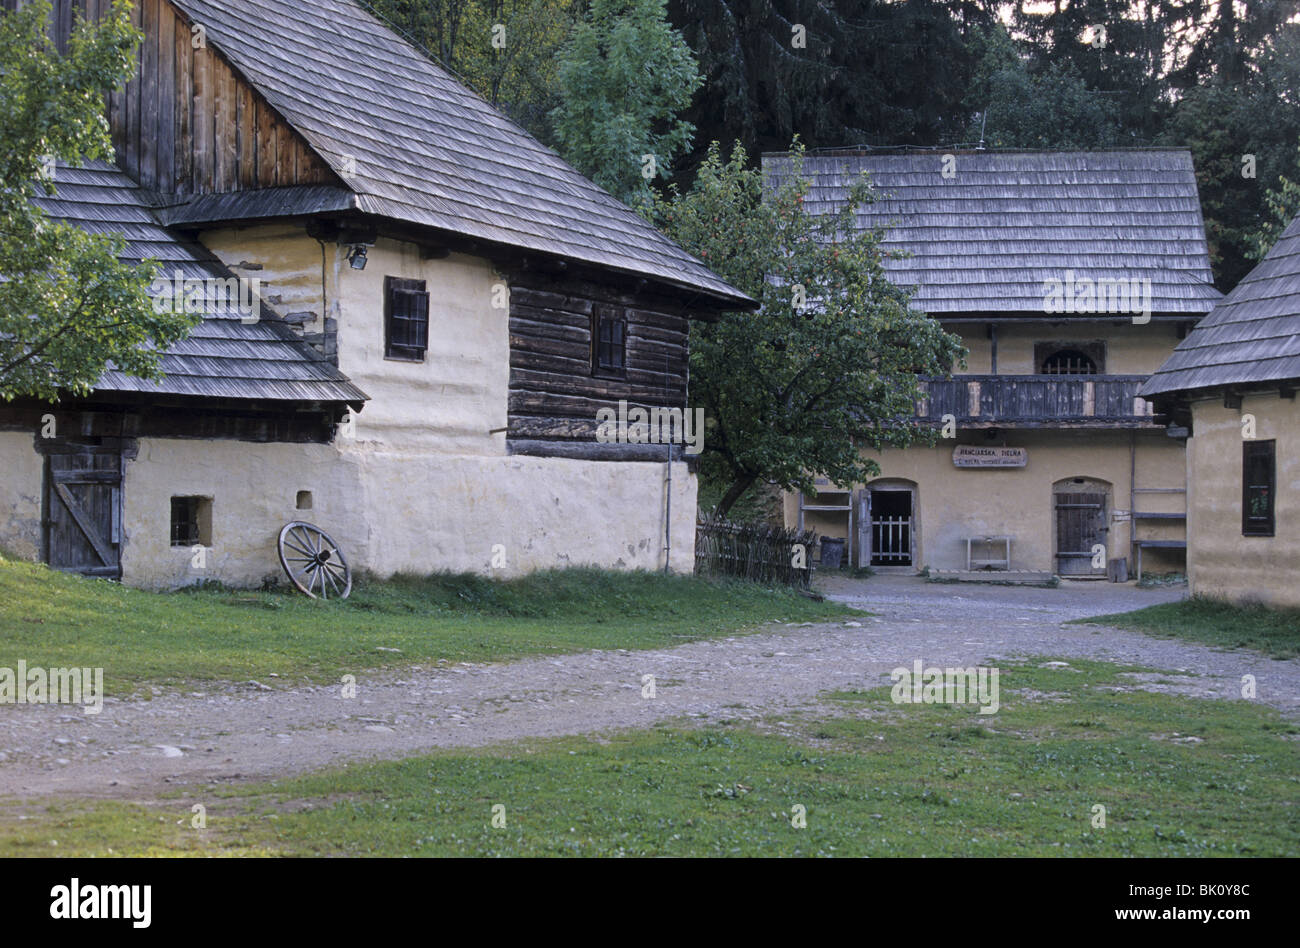 Tradizionali case di legno nel museo a cielo aperto che rappresentano il villaggio della regione di Orava (Muzeum oravskej dediny Zuberec hanno -Brestova) Foto Stock